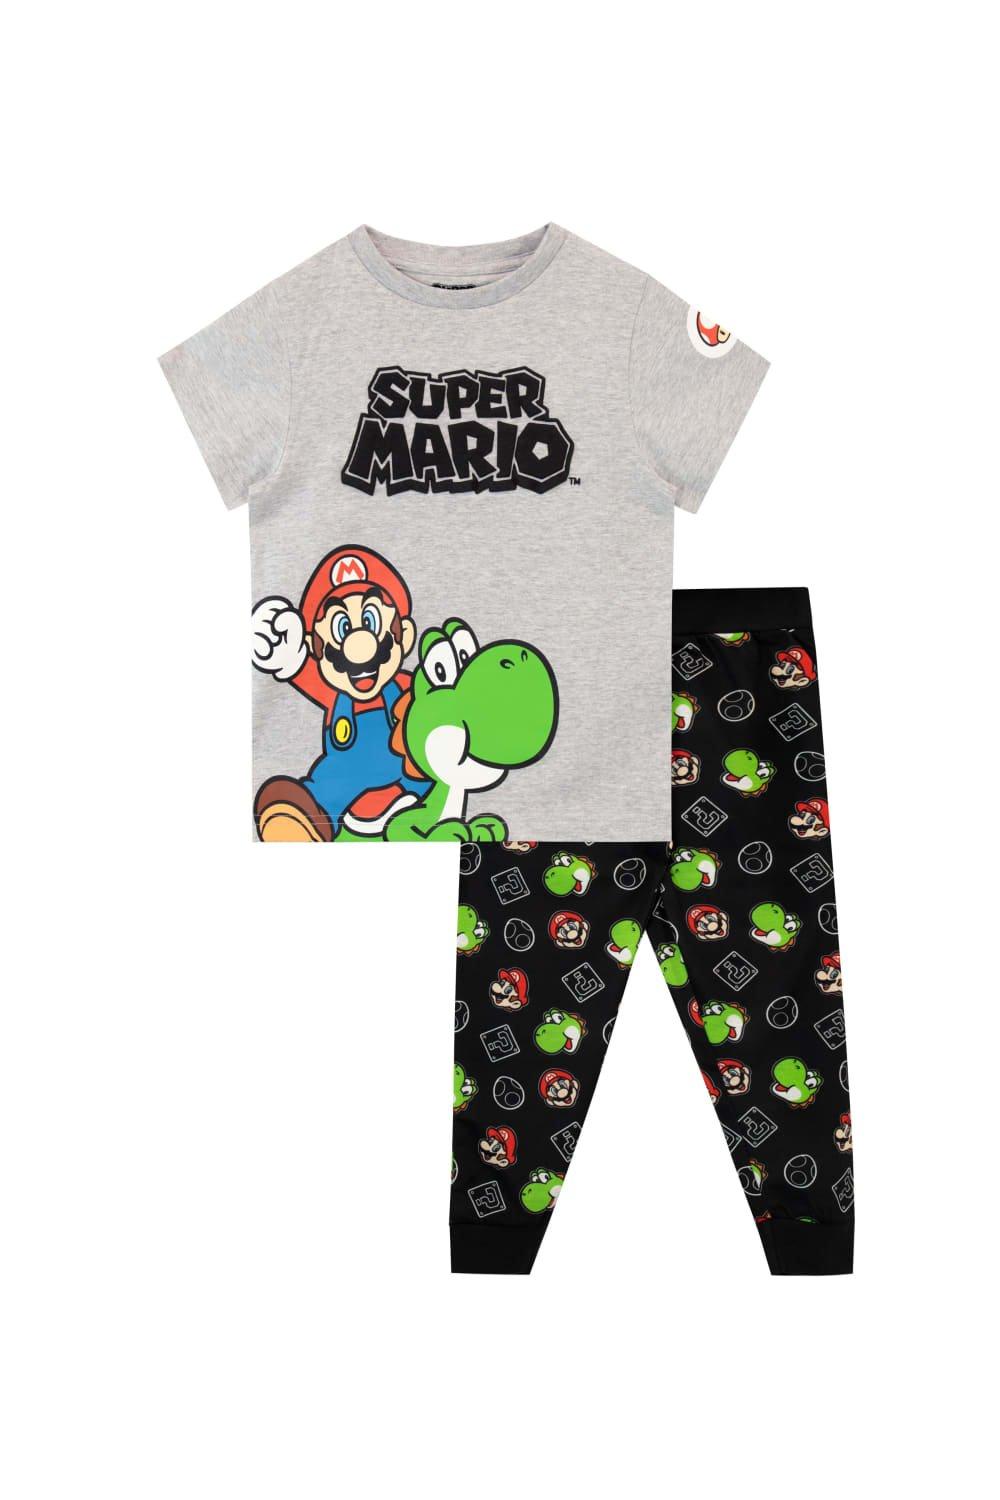 Mario and Yoshi Pyjamas